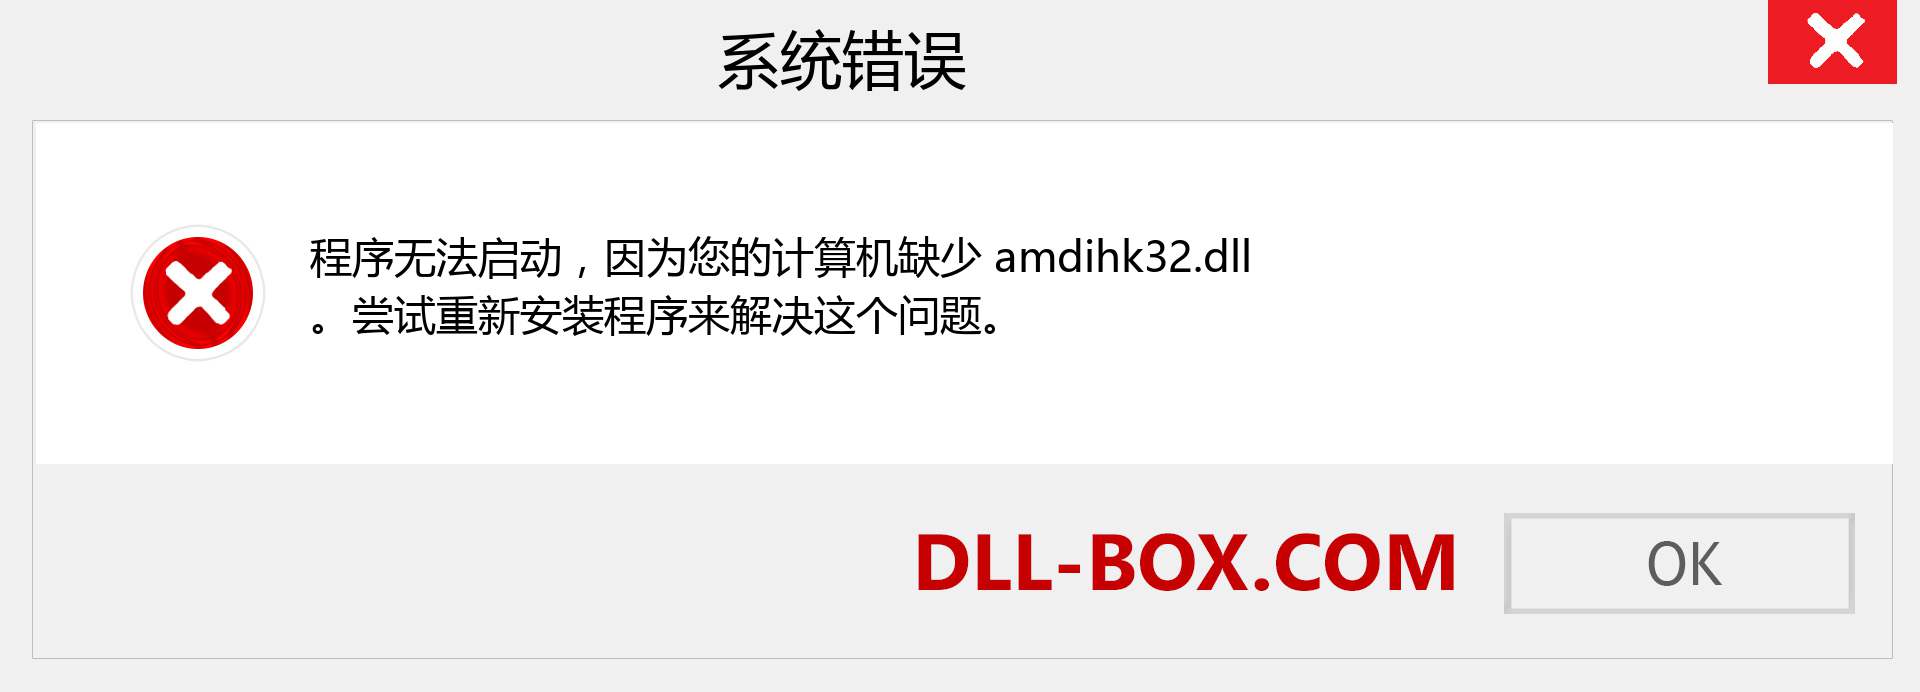 amdihk32.dll 文件丢失？。 适用于 Windows 7、8、10 的下载 - 修复 Windows、照片、图像上的 amdihk32 dll 丢失错误